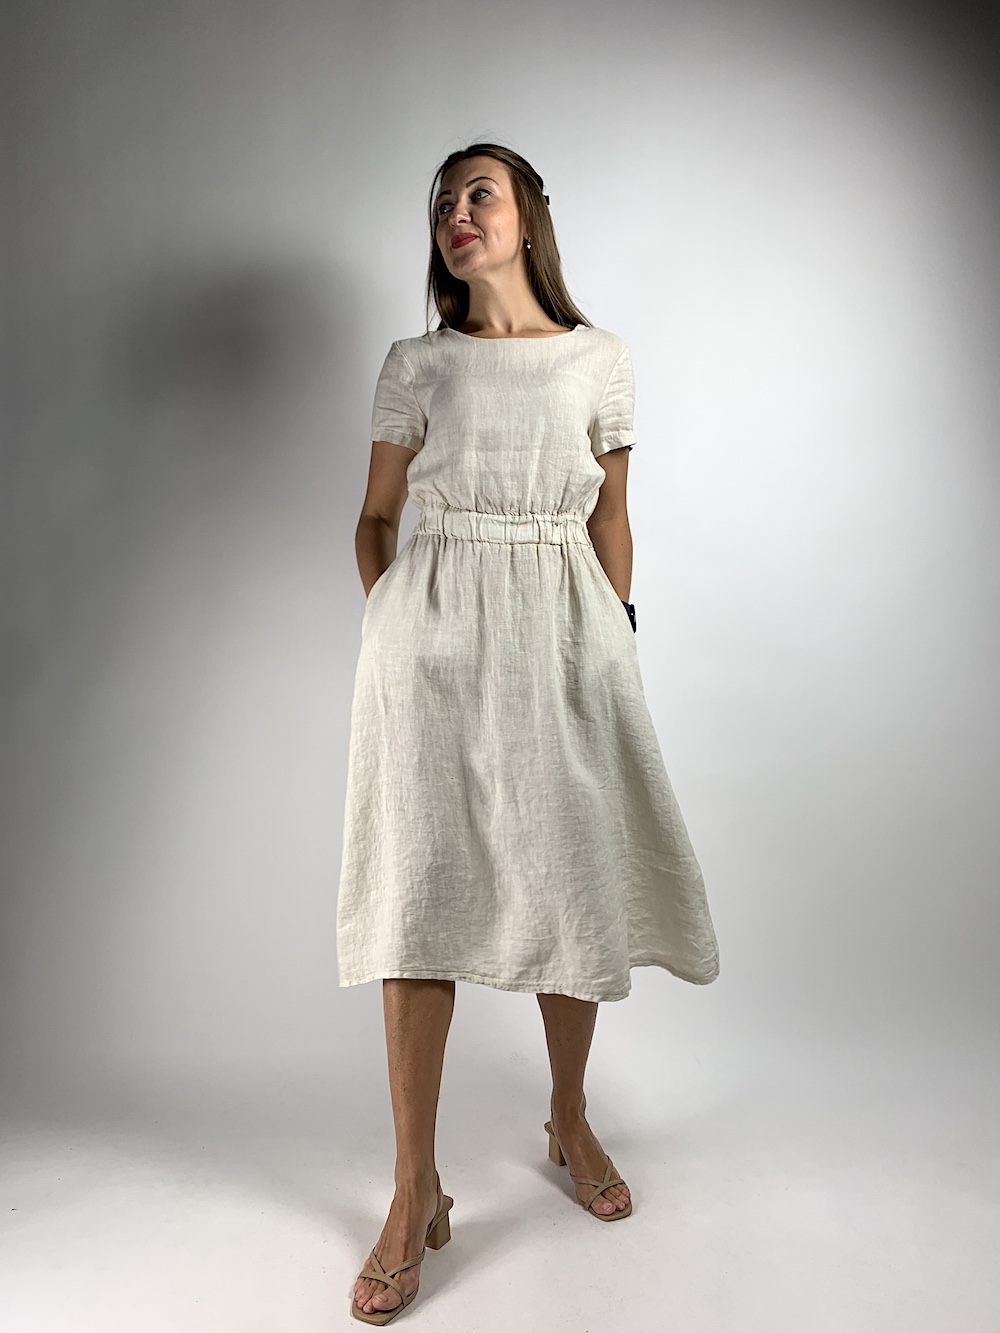 Лляна бежева сукня на талії резинка італійського бренду No-Na